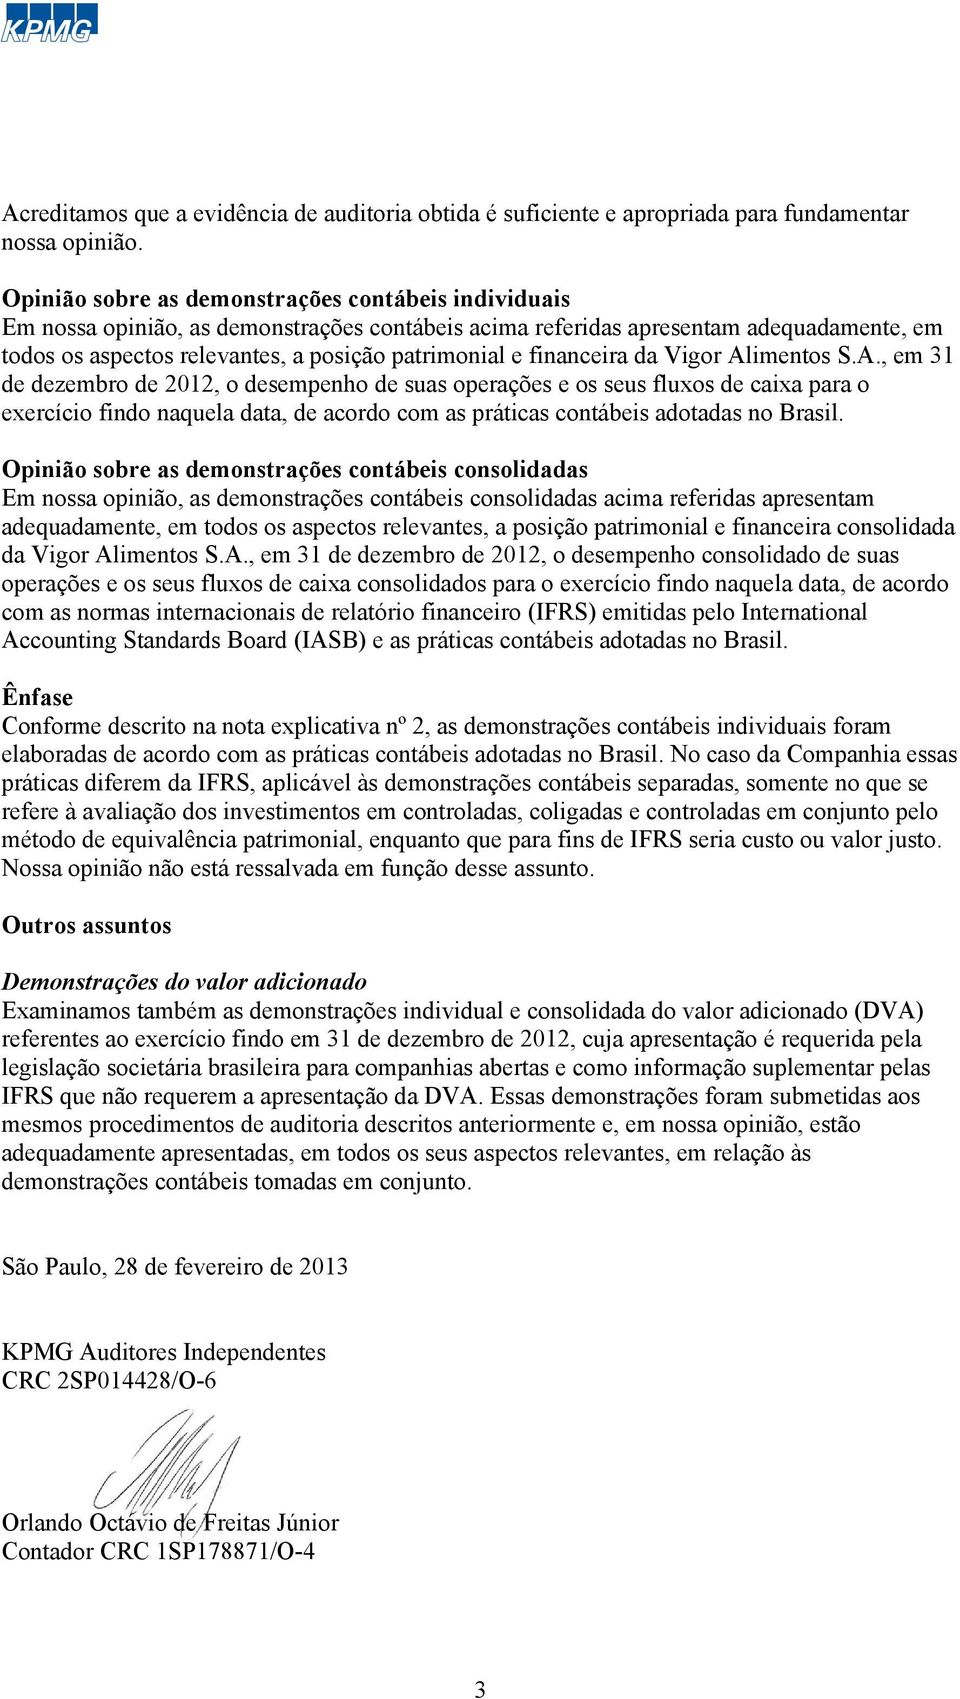 financeira da Vigor Alimentos S.A., em 31 de dezembro de 2012, o desempenho de suas operações e os seus fluxos de caixa para o exercício findo naquela data, de acordo com as práticas contábeis adotadas no Brasil.